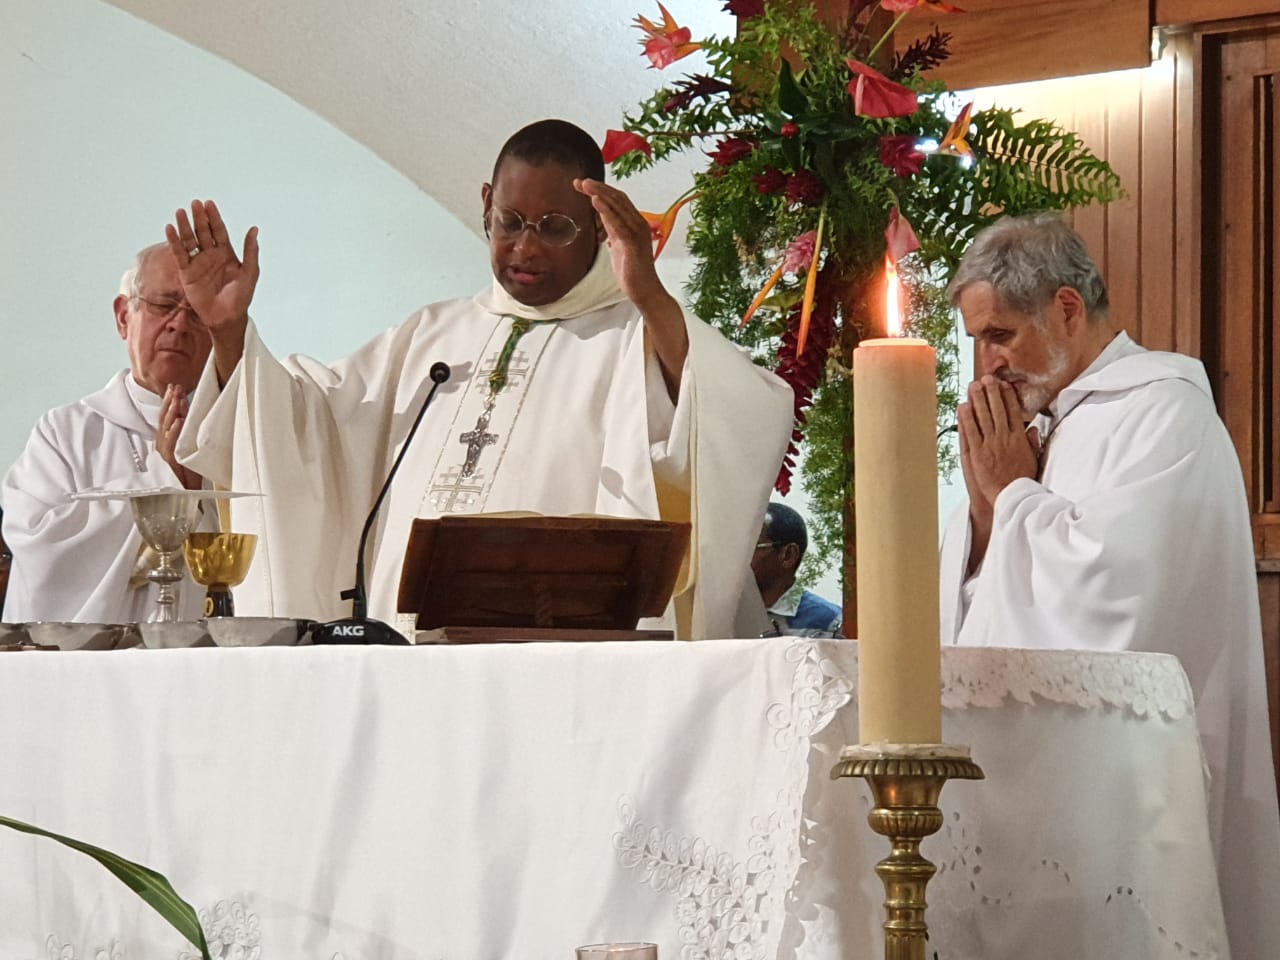     Les ecclésiastiques des Antilles-Guyane réunis en Guadeloupe 

